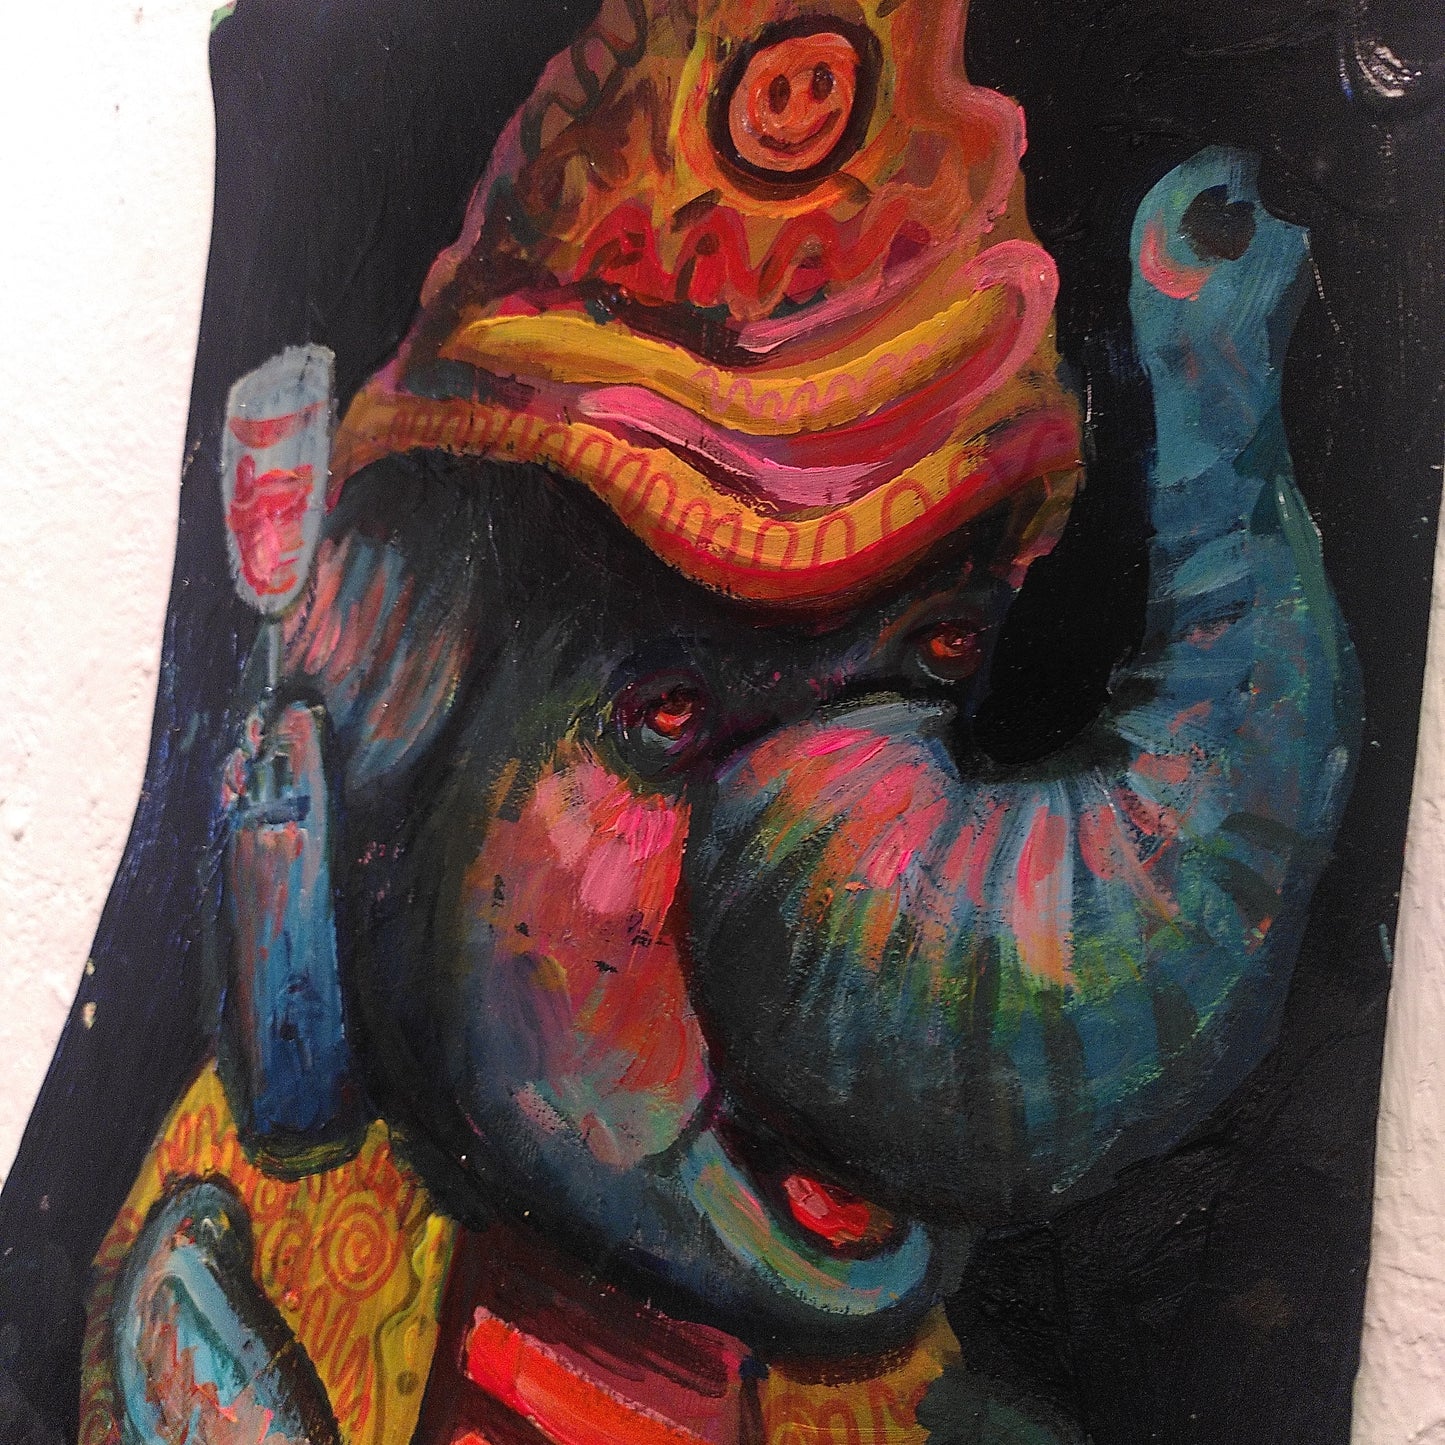 "Groovy Ganesha III" // Sonderedition by Uli Pforr